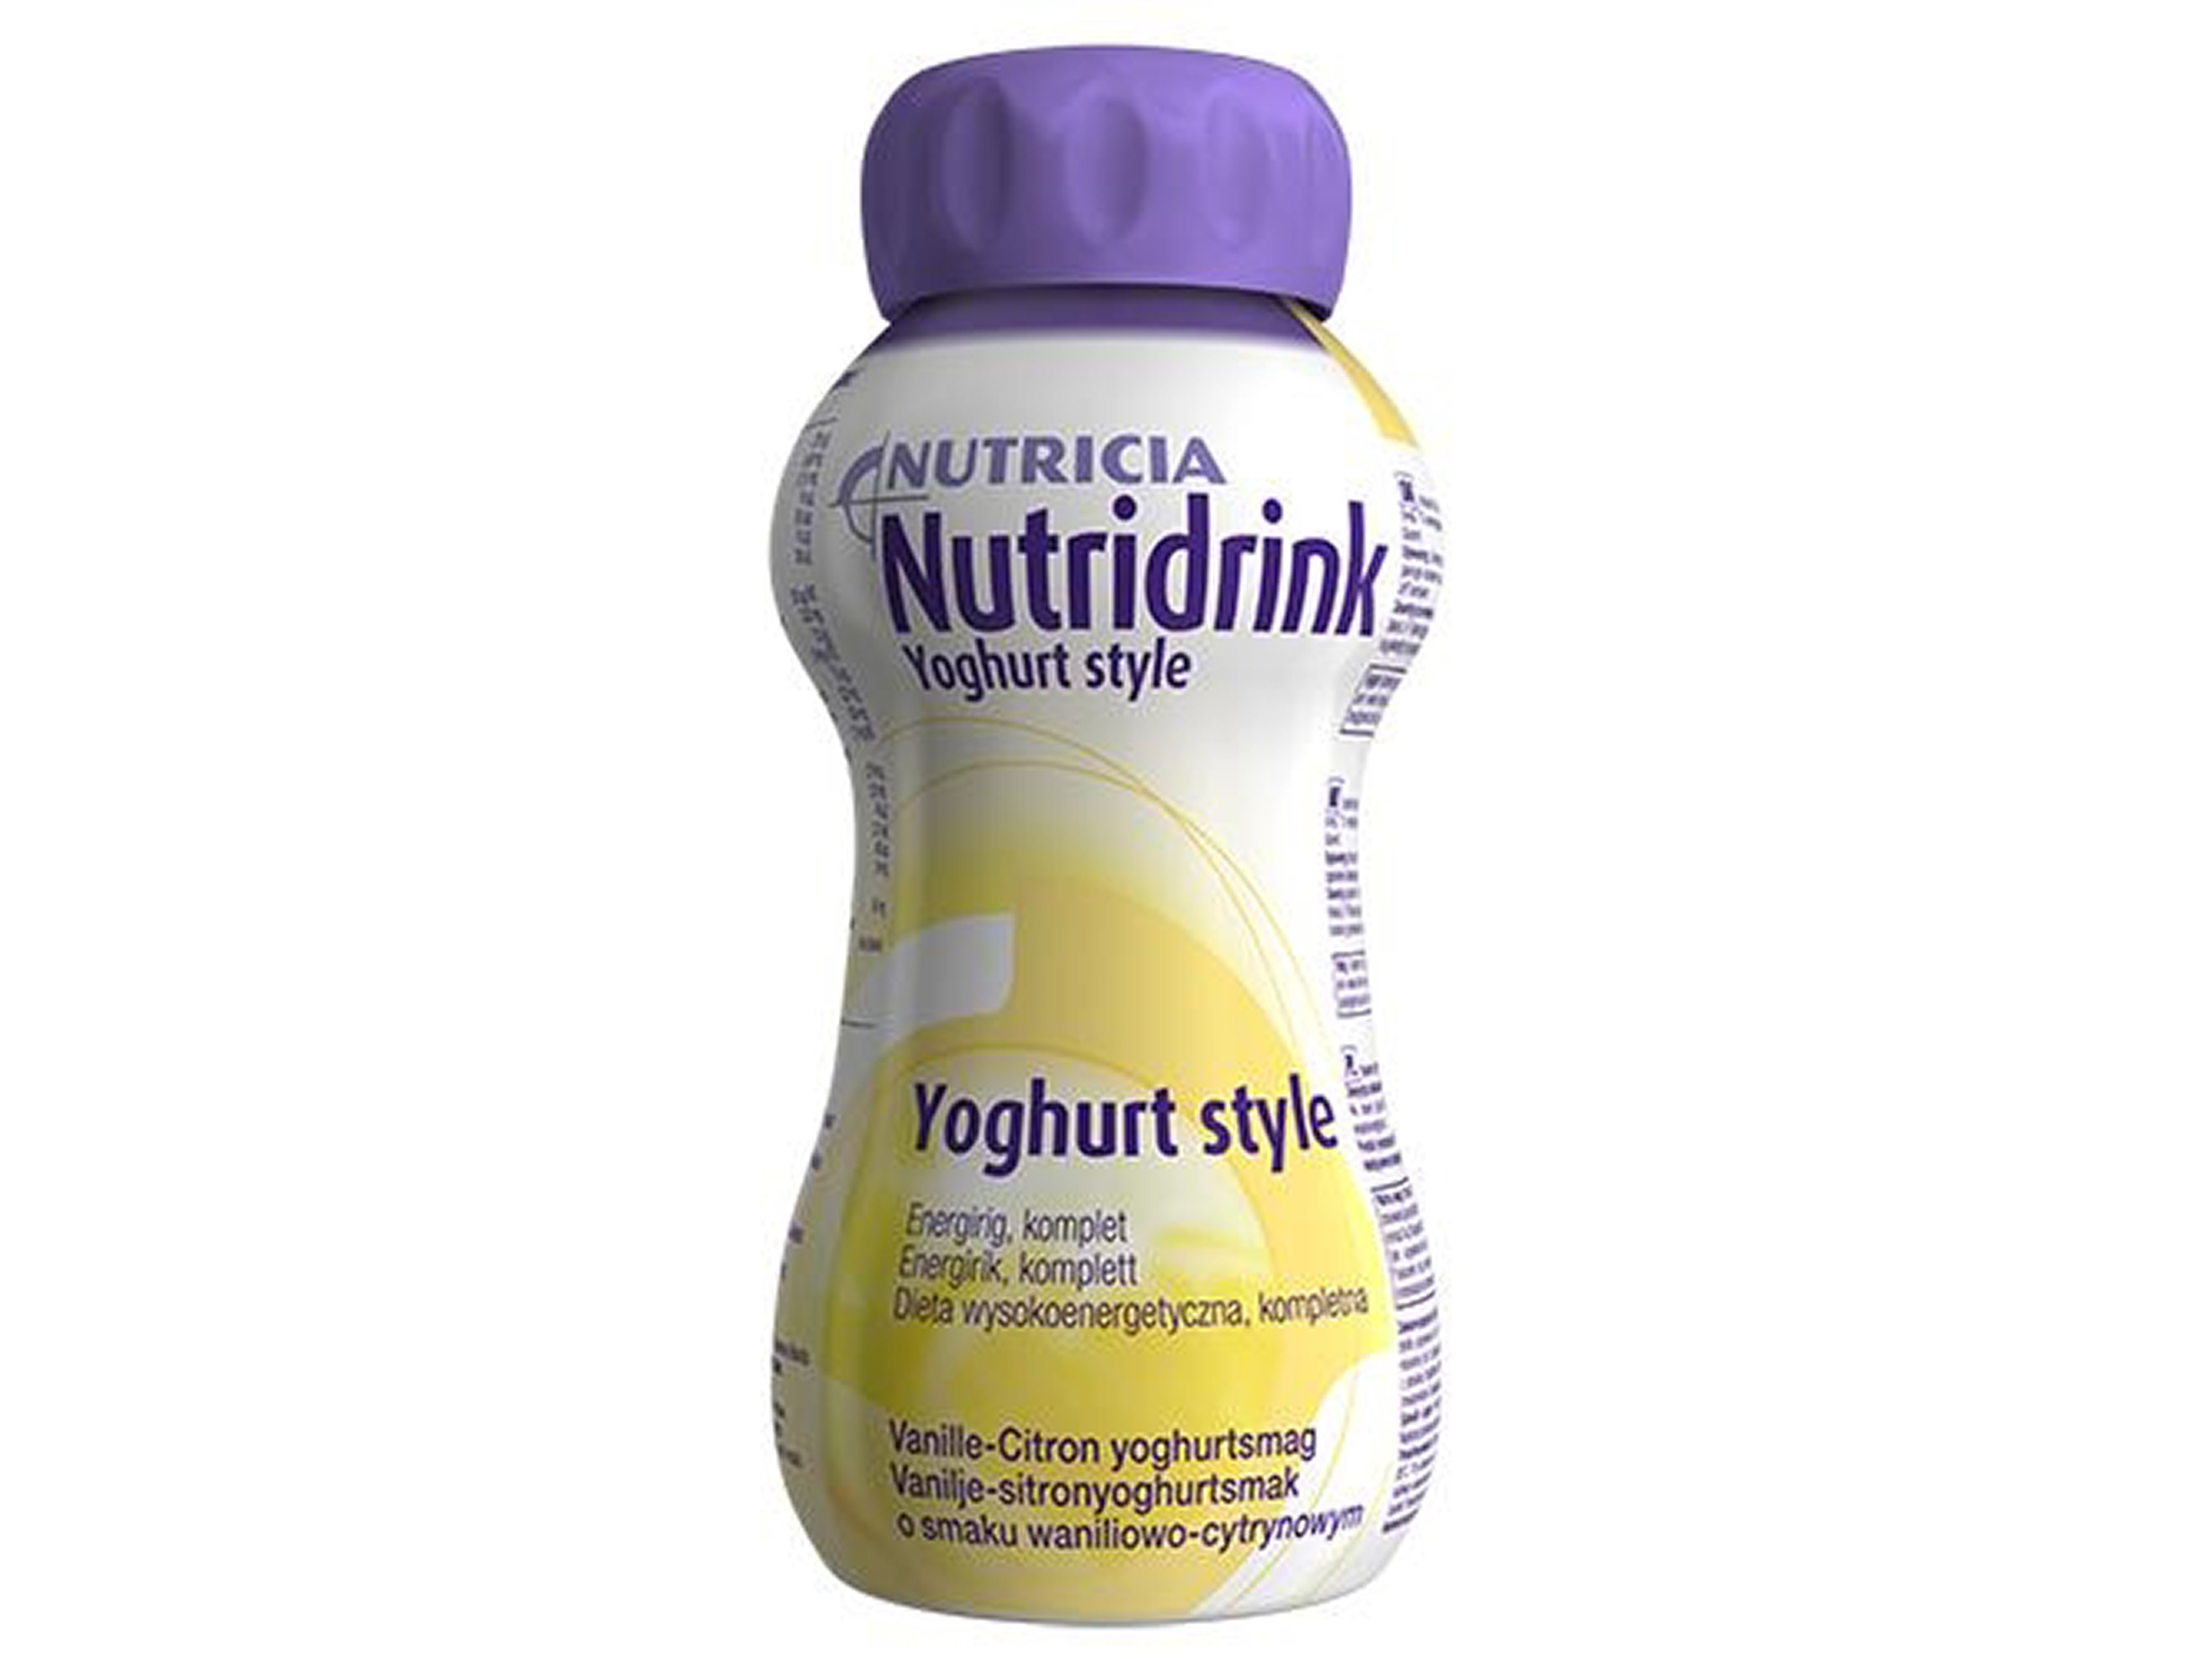 Nutridrink Yoghurt Style næringsdrikk, Vanilije og sitron, 4 x 200 ml